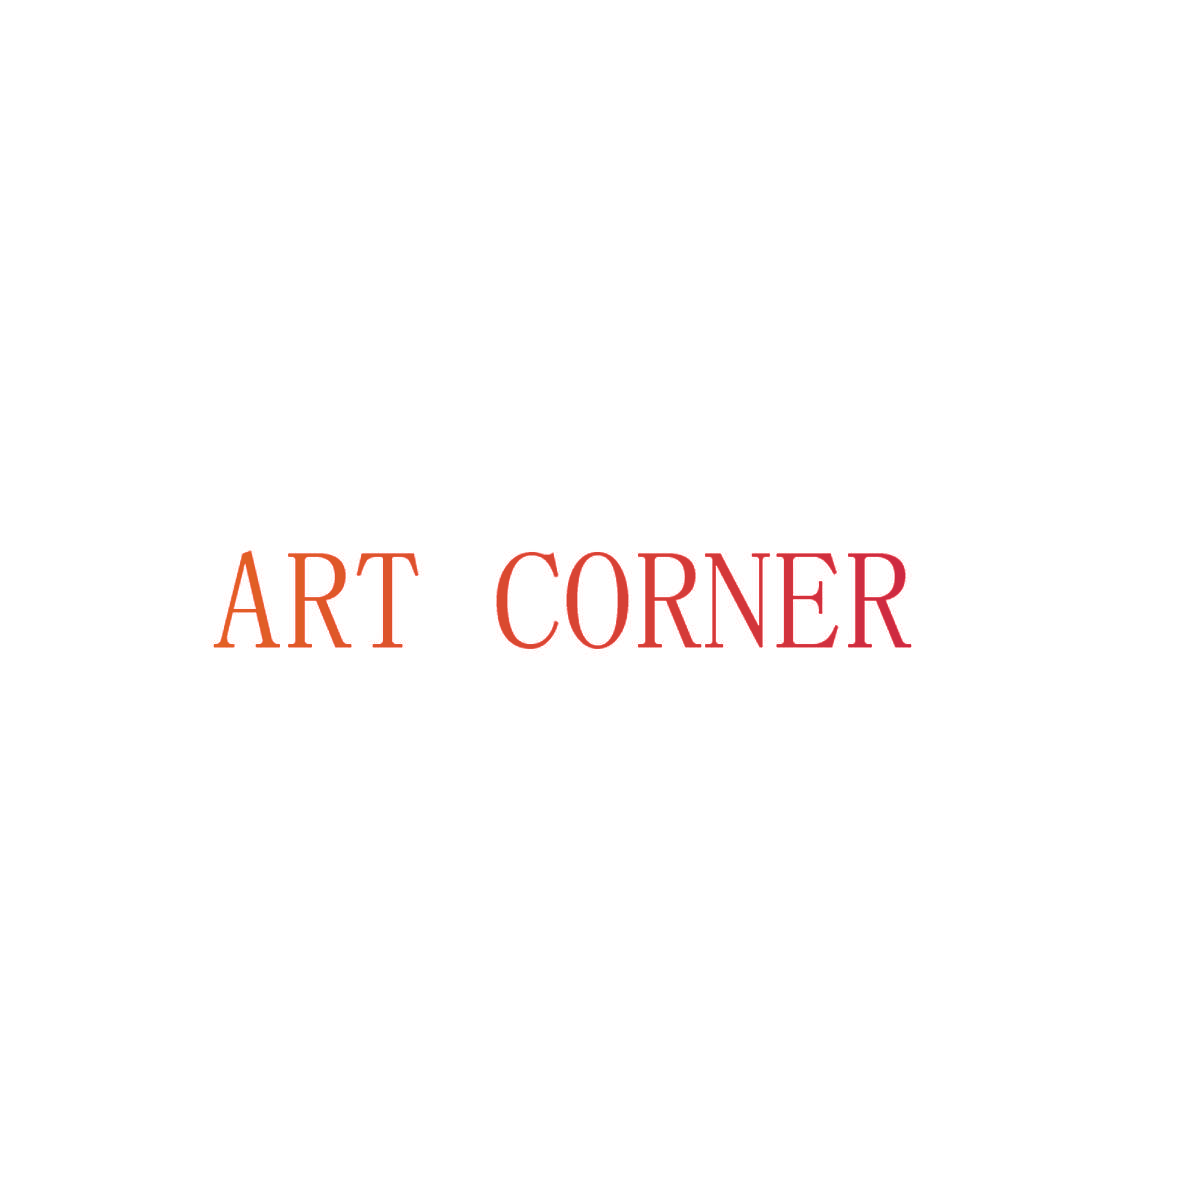 ART CORNER